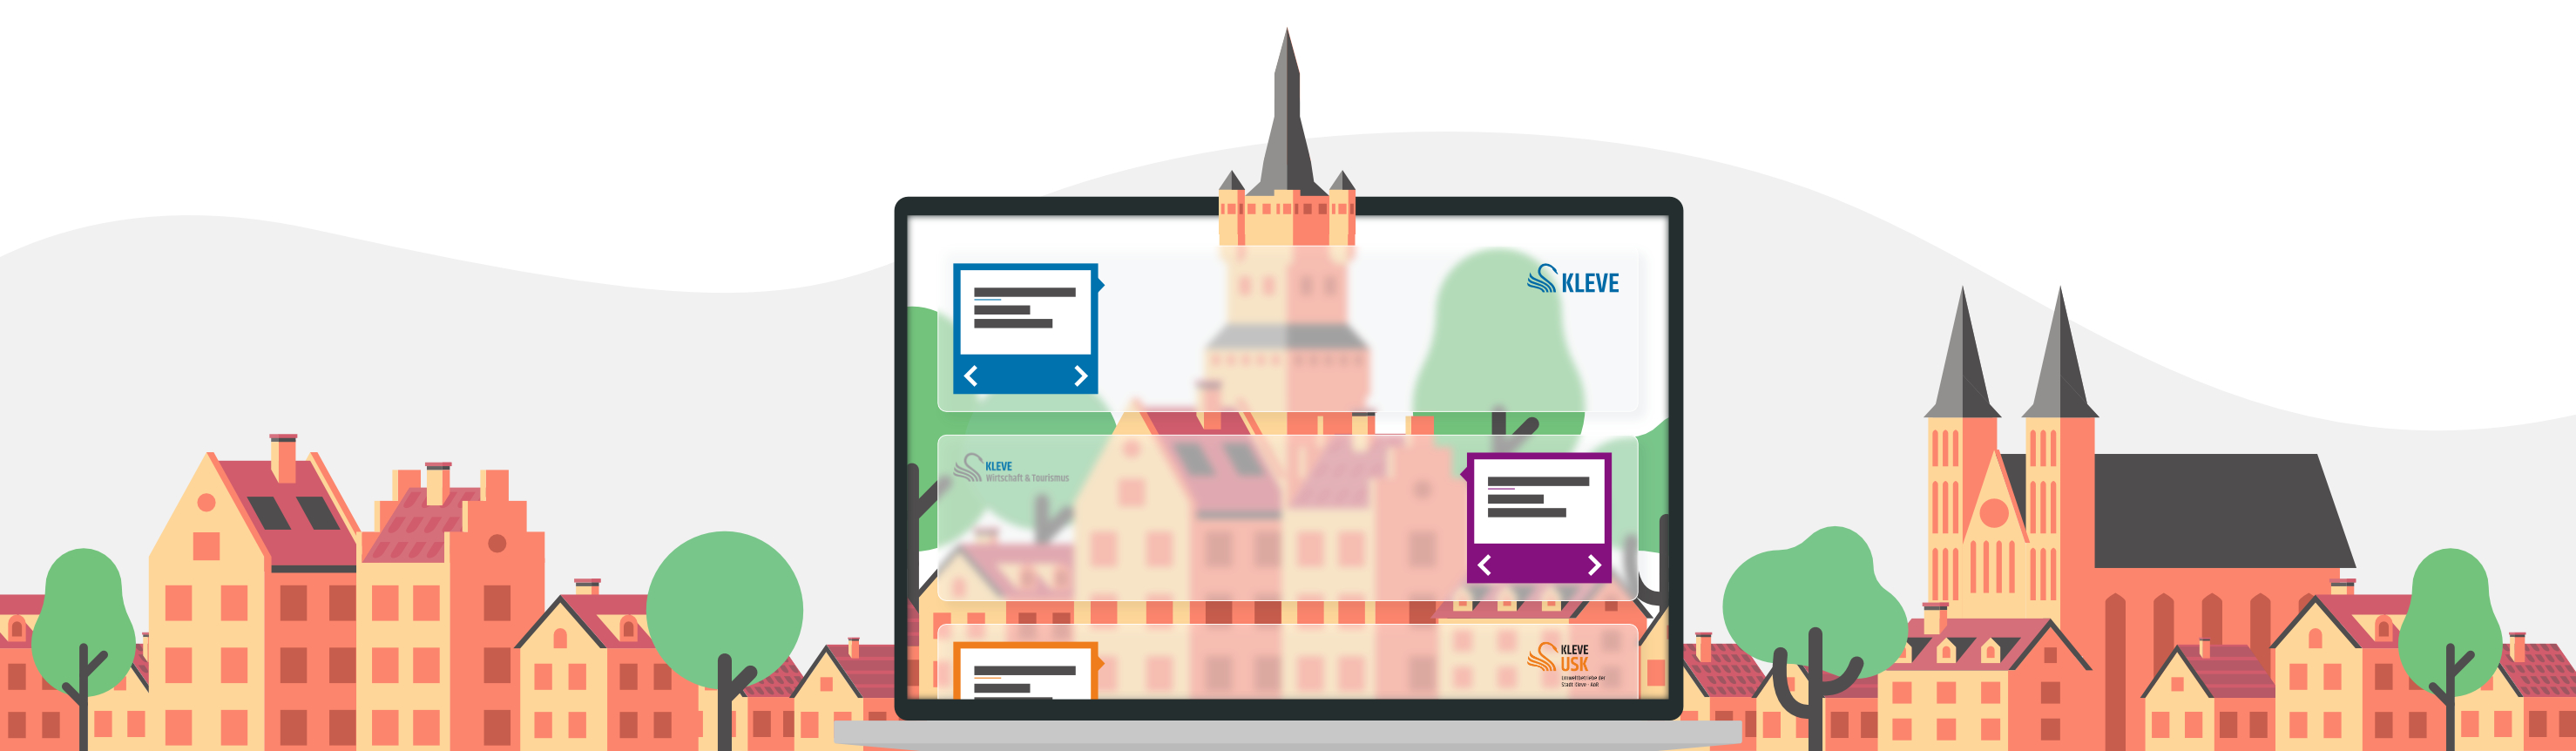 Eine Illustration der Klever Skyline mit einer abstrahierten Darstellung der neuen Internetseite